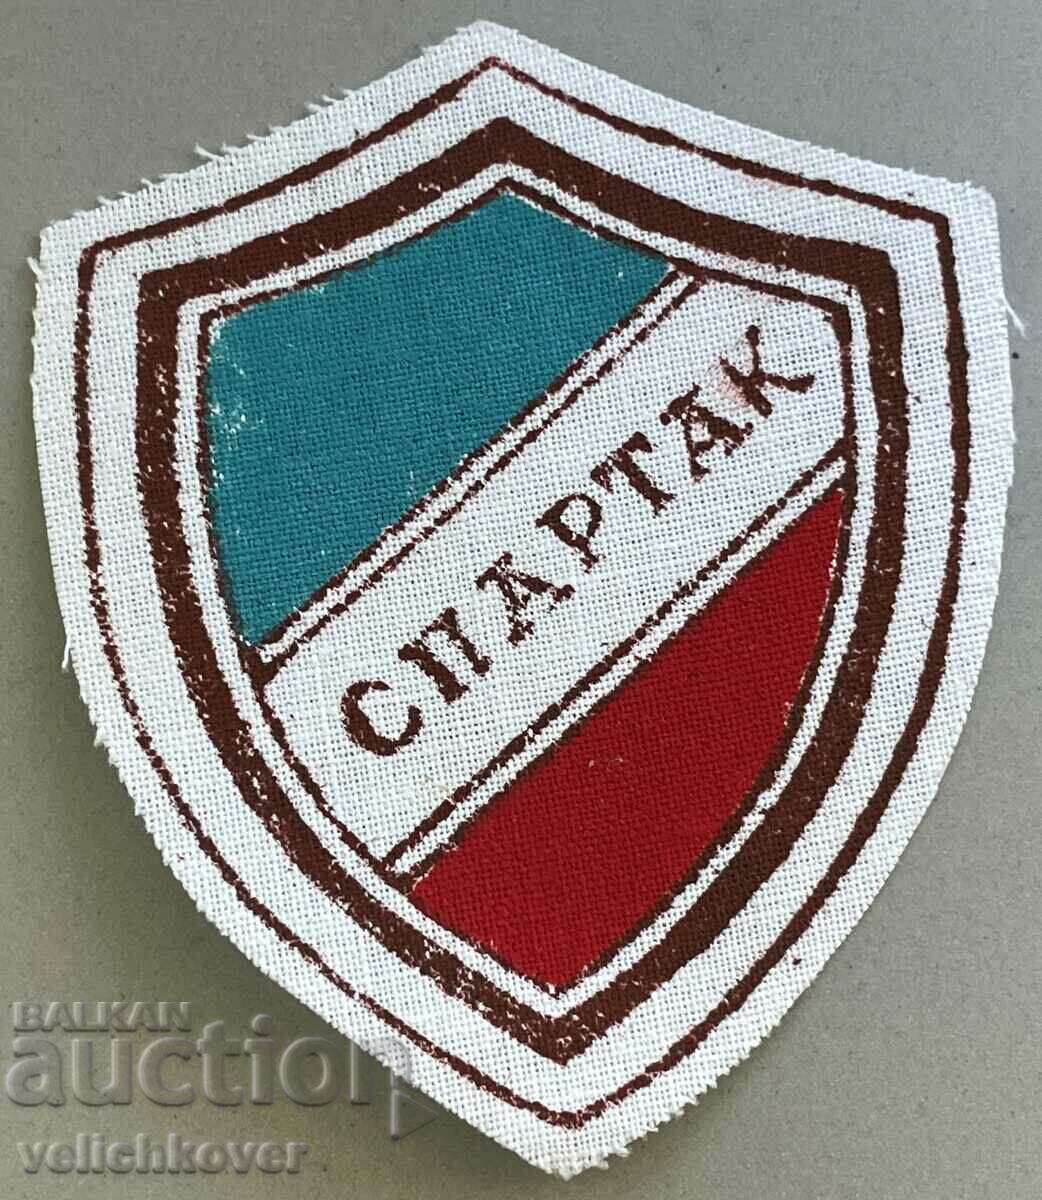 34567 Bulgaria patch sportek club Spartak